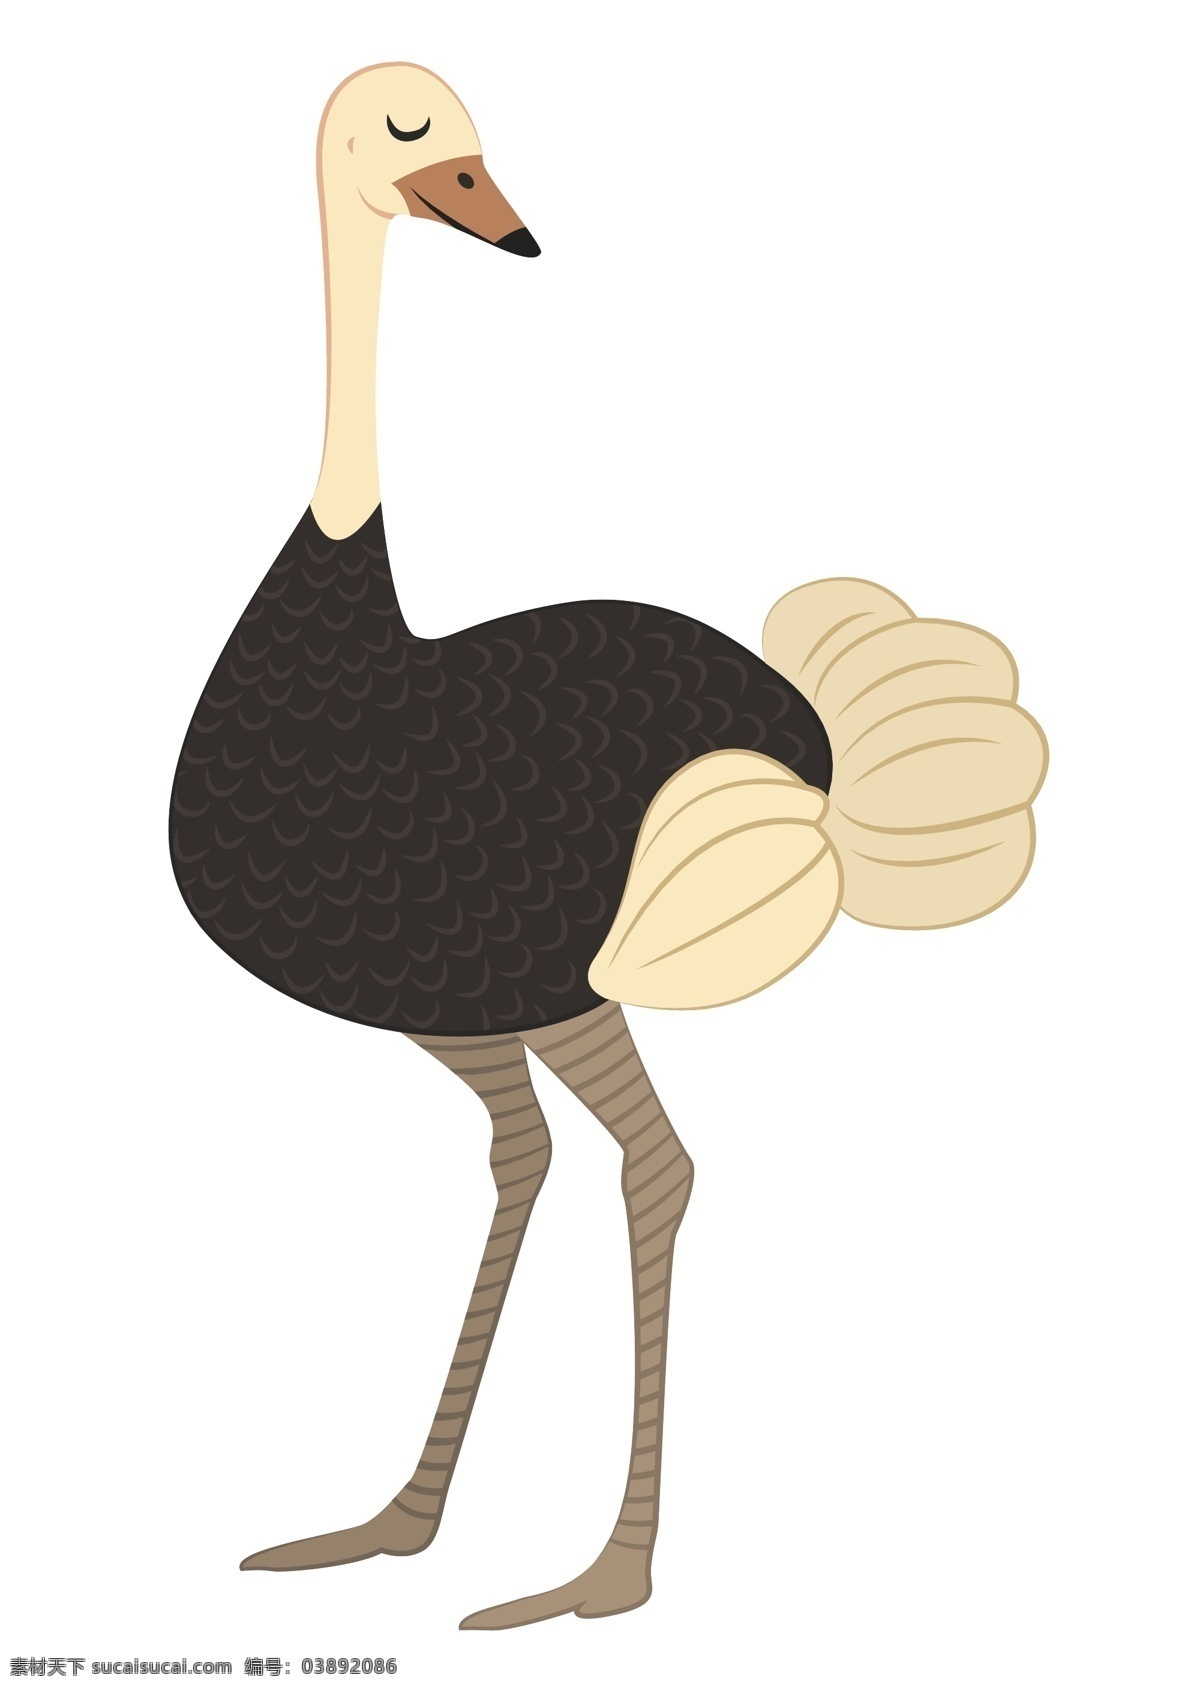 鸵鸟图片 鸵鸟 小动物 动物世界 生物世界 动物园 儿童读物 儿童画 插画 卡通 看图识物 图画书 幼儿园 小朋友 乐园 手绘 卡通动物 卡通设计